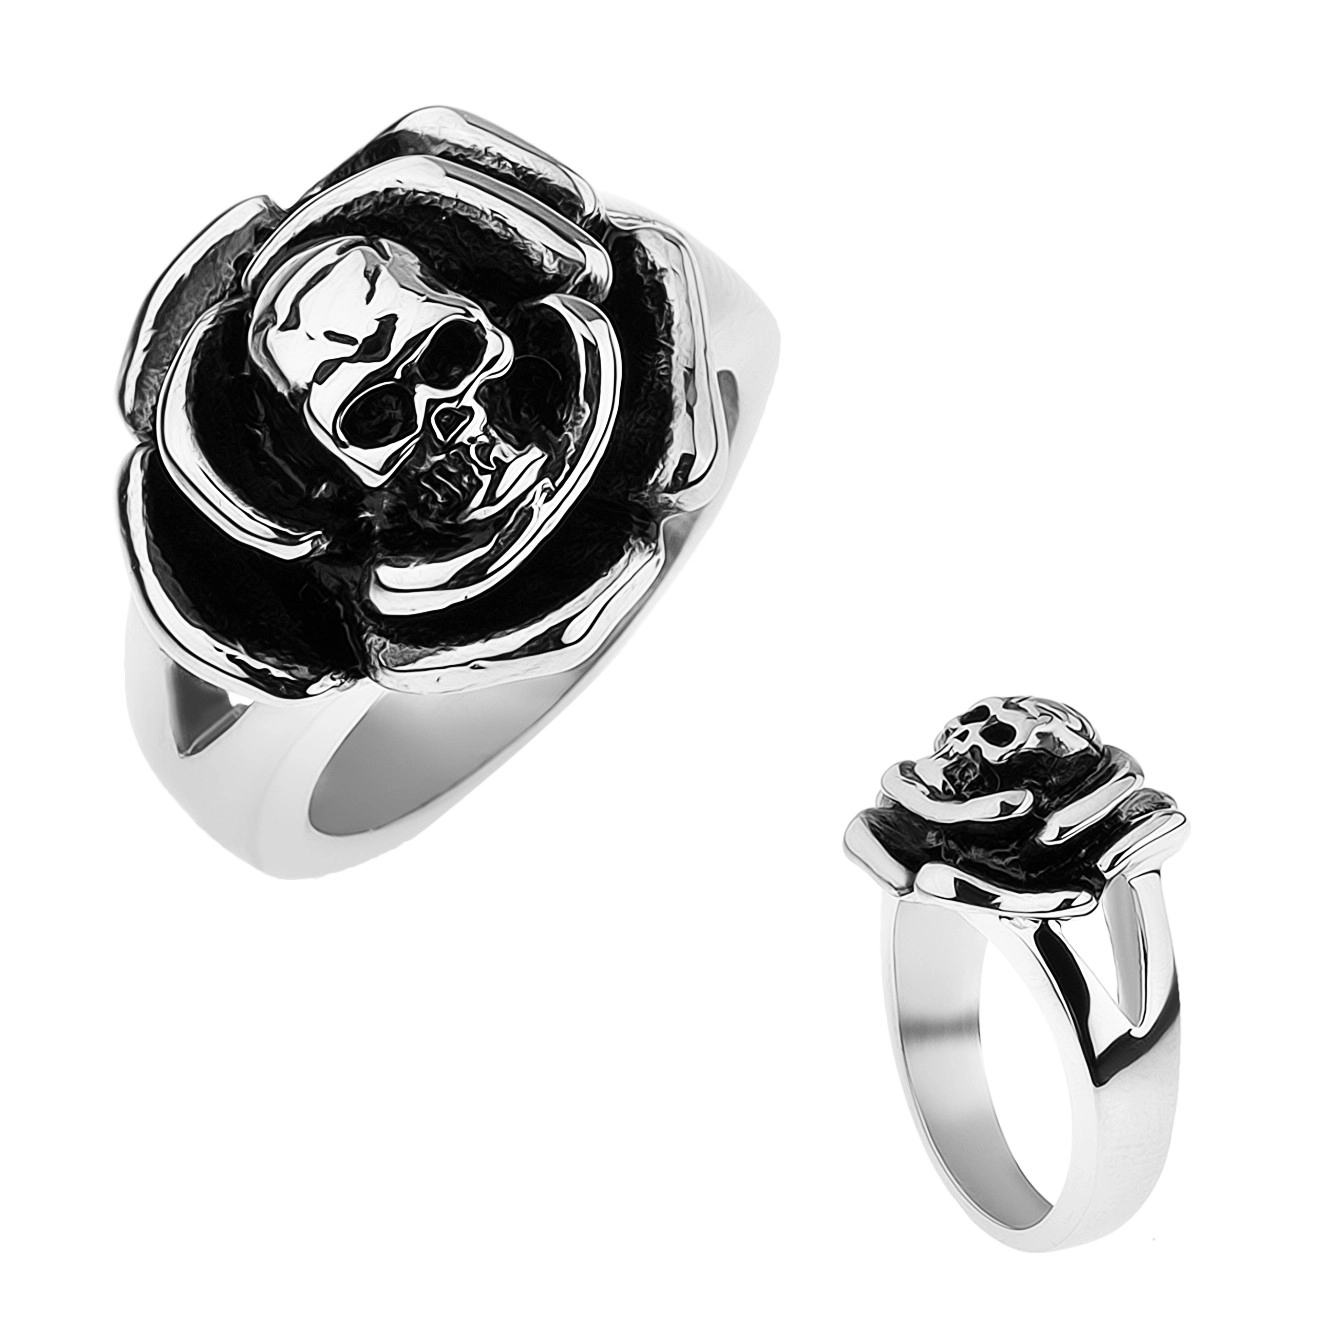 Patinovaný oceľový prsteň, ruža s lebkou v strede, rozdvojené ramená - Veľkosť: 66 mm